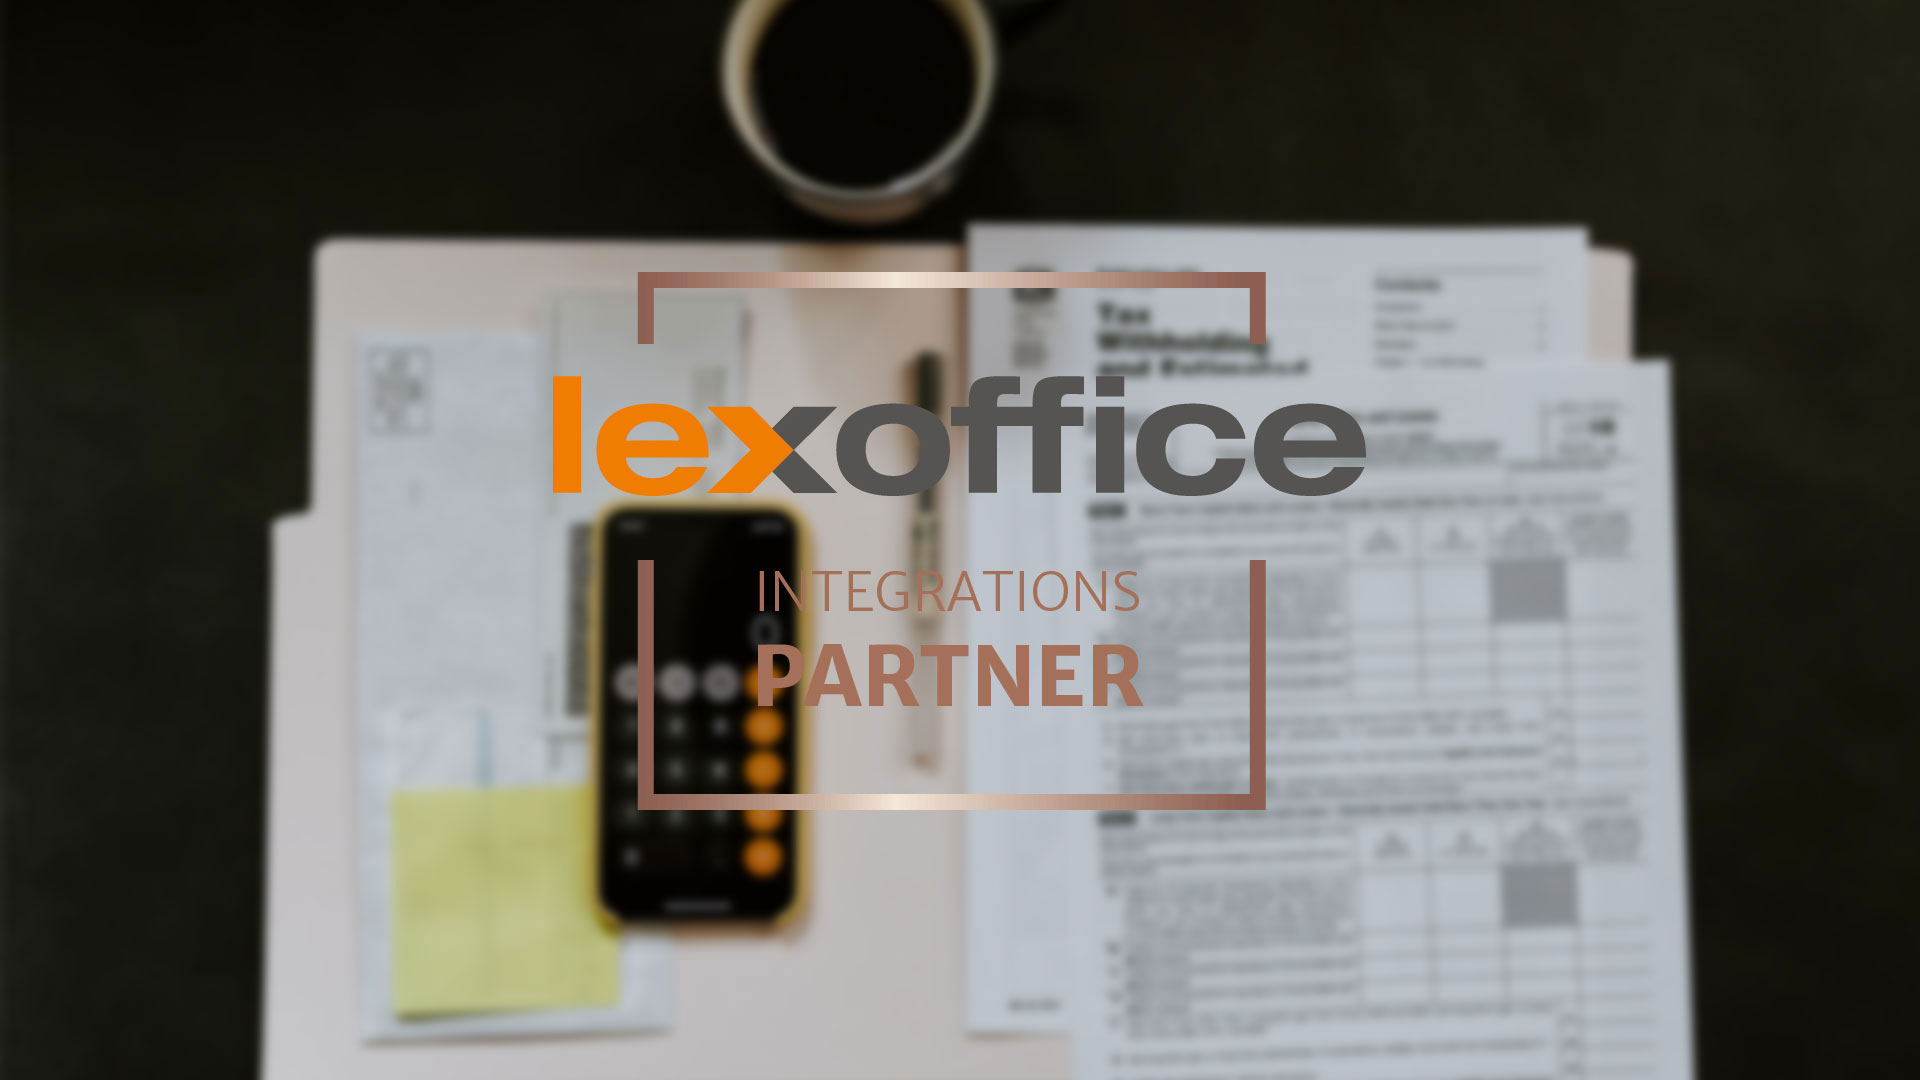 Wir sind lexoffice Partner!